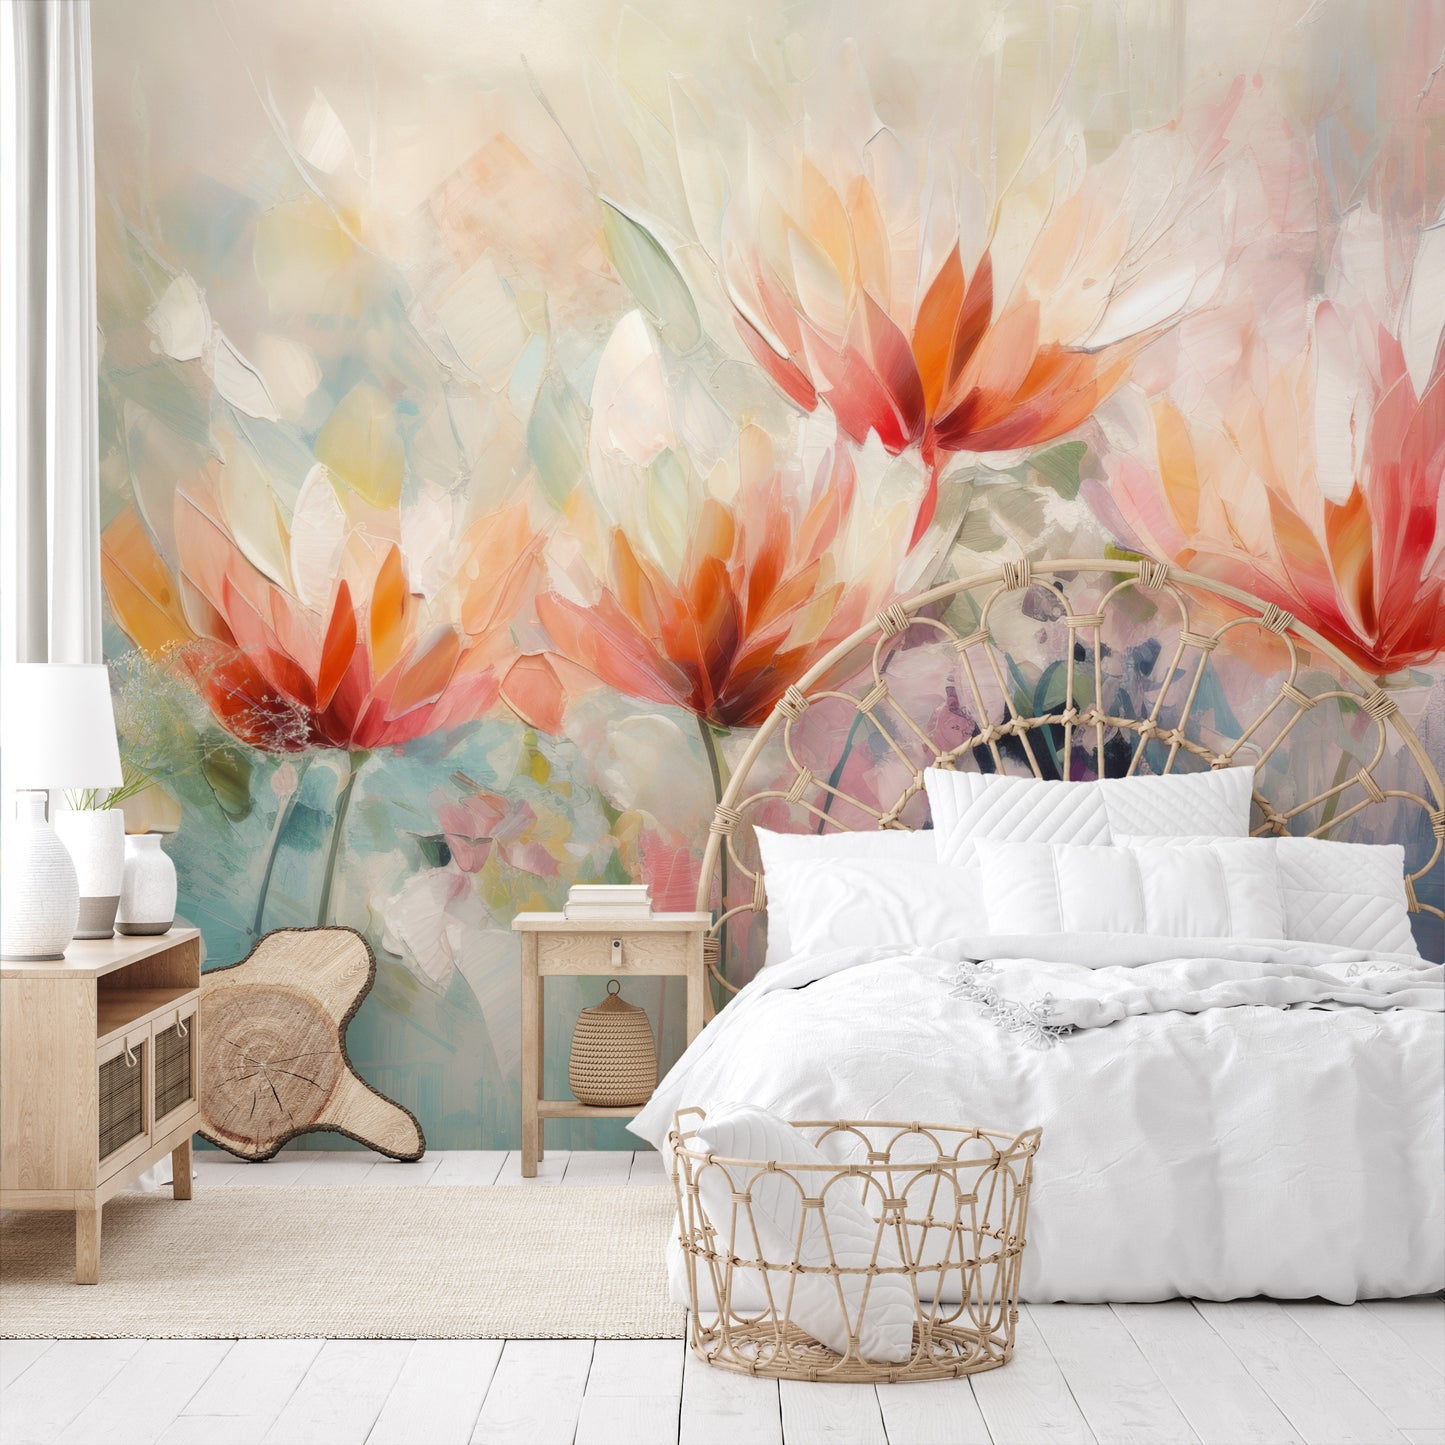 Wzór fototapety o nazwie Vibrant Floral Symphony pokazanej w kontekście pomieszczenia.